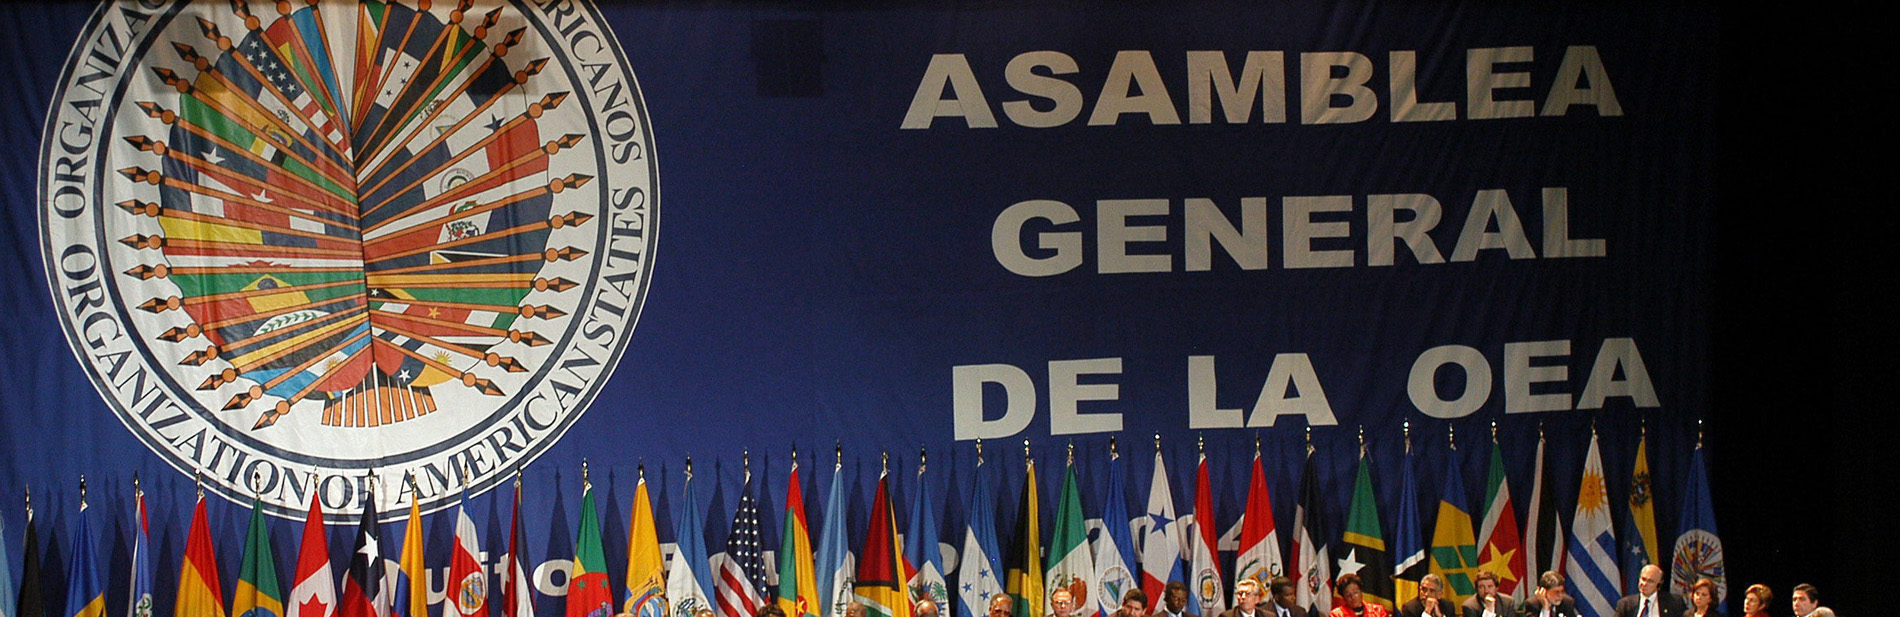 La Asamblea General - Representación Permanente del Perú ante la OEA, Washington DC